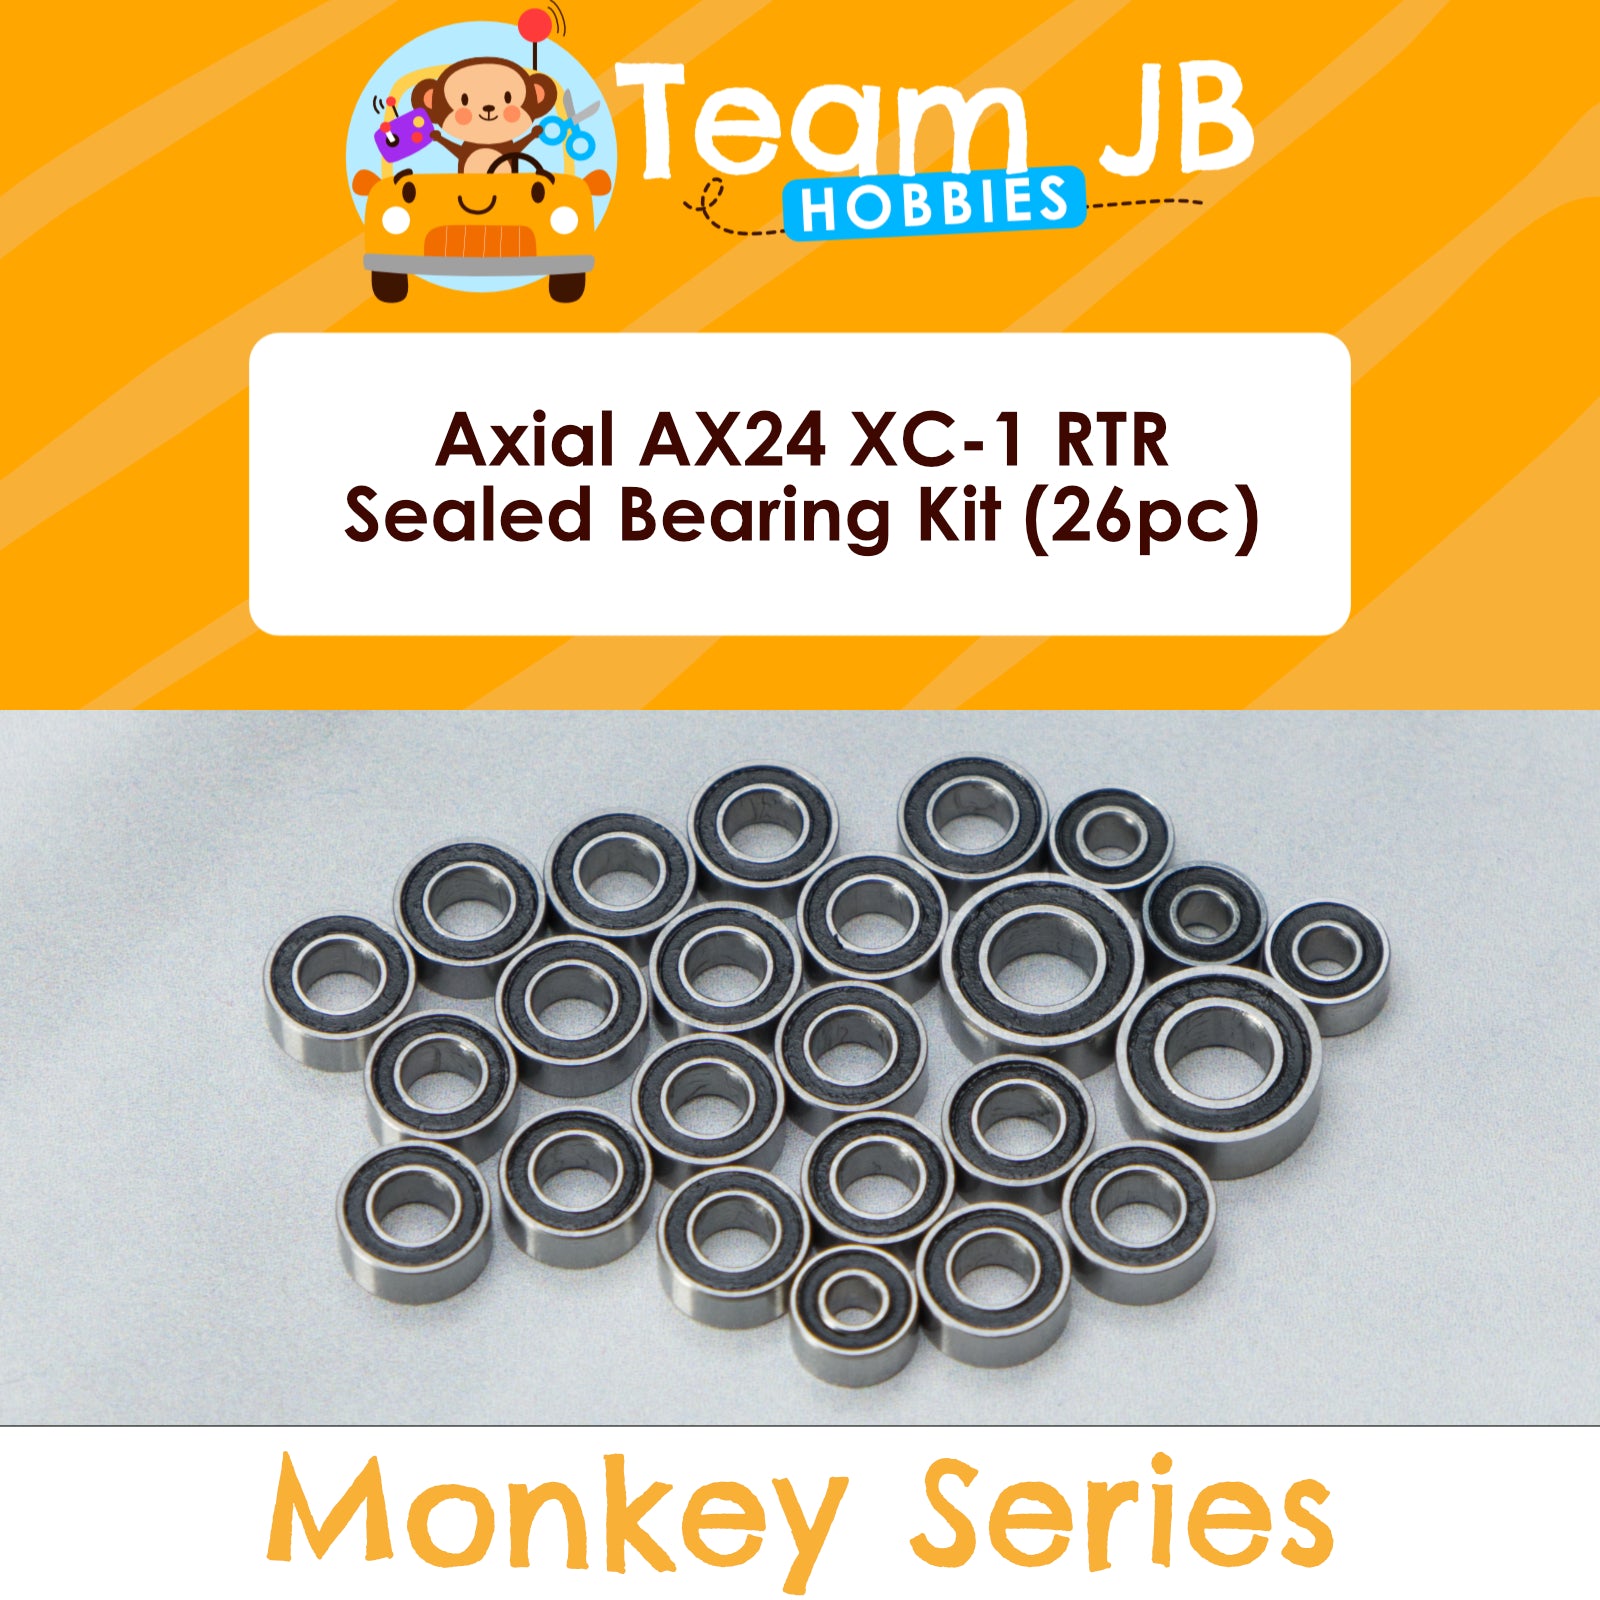 Axial AX24 XC-1 RTR - Sealed Bearing Kit